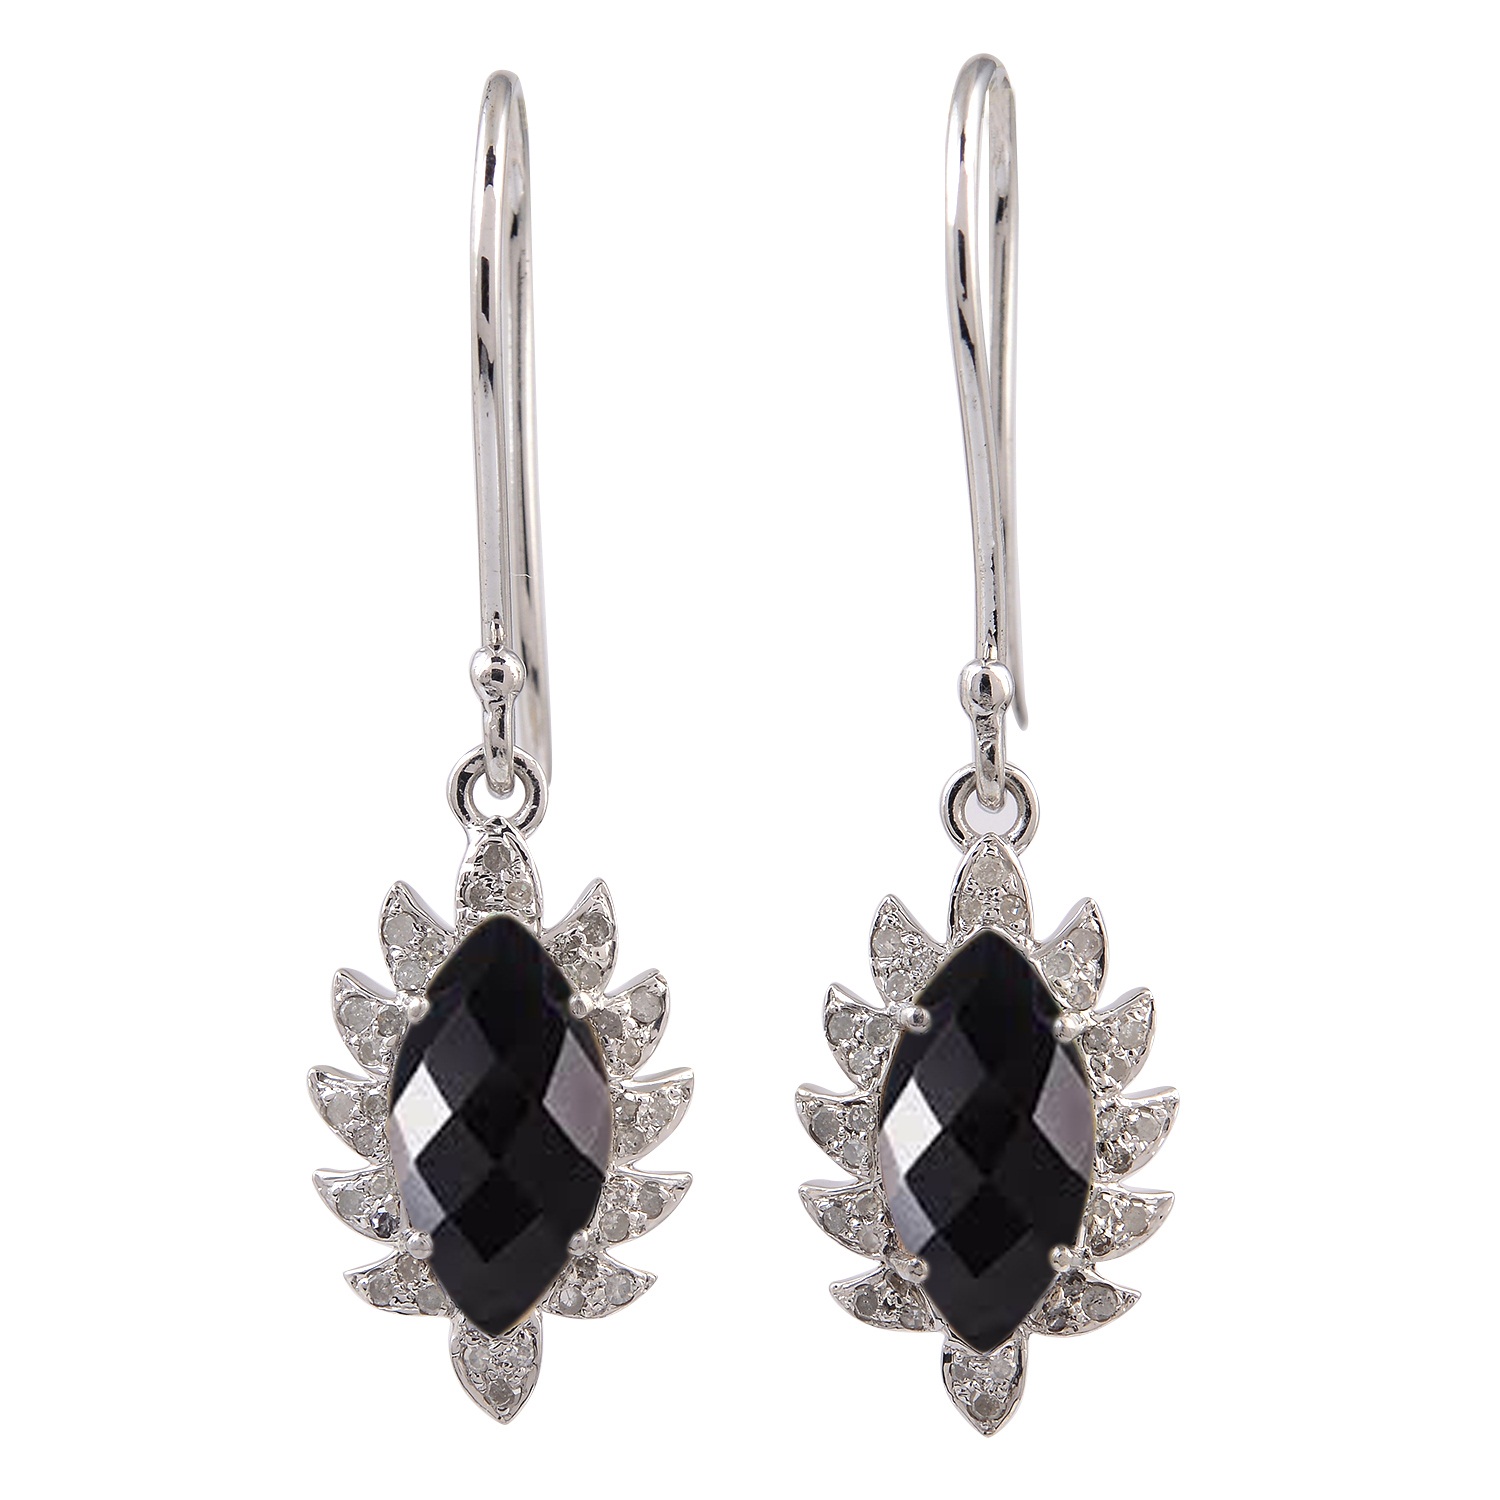 Birthstone Earrings Semi Precious Gemstone Earrings Beautiful Black Onyx Sterling Silver Dangle Earrings Meditation Earrings